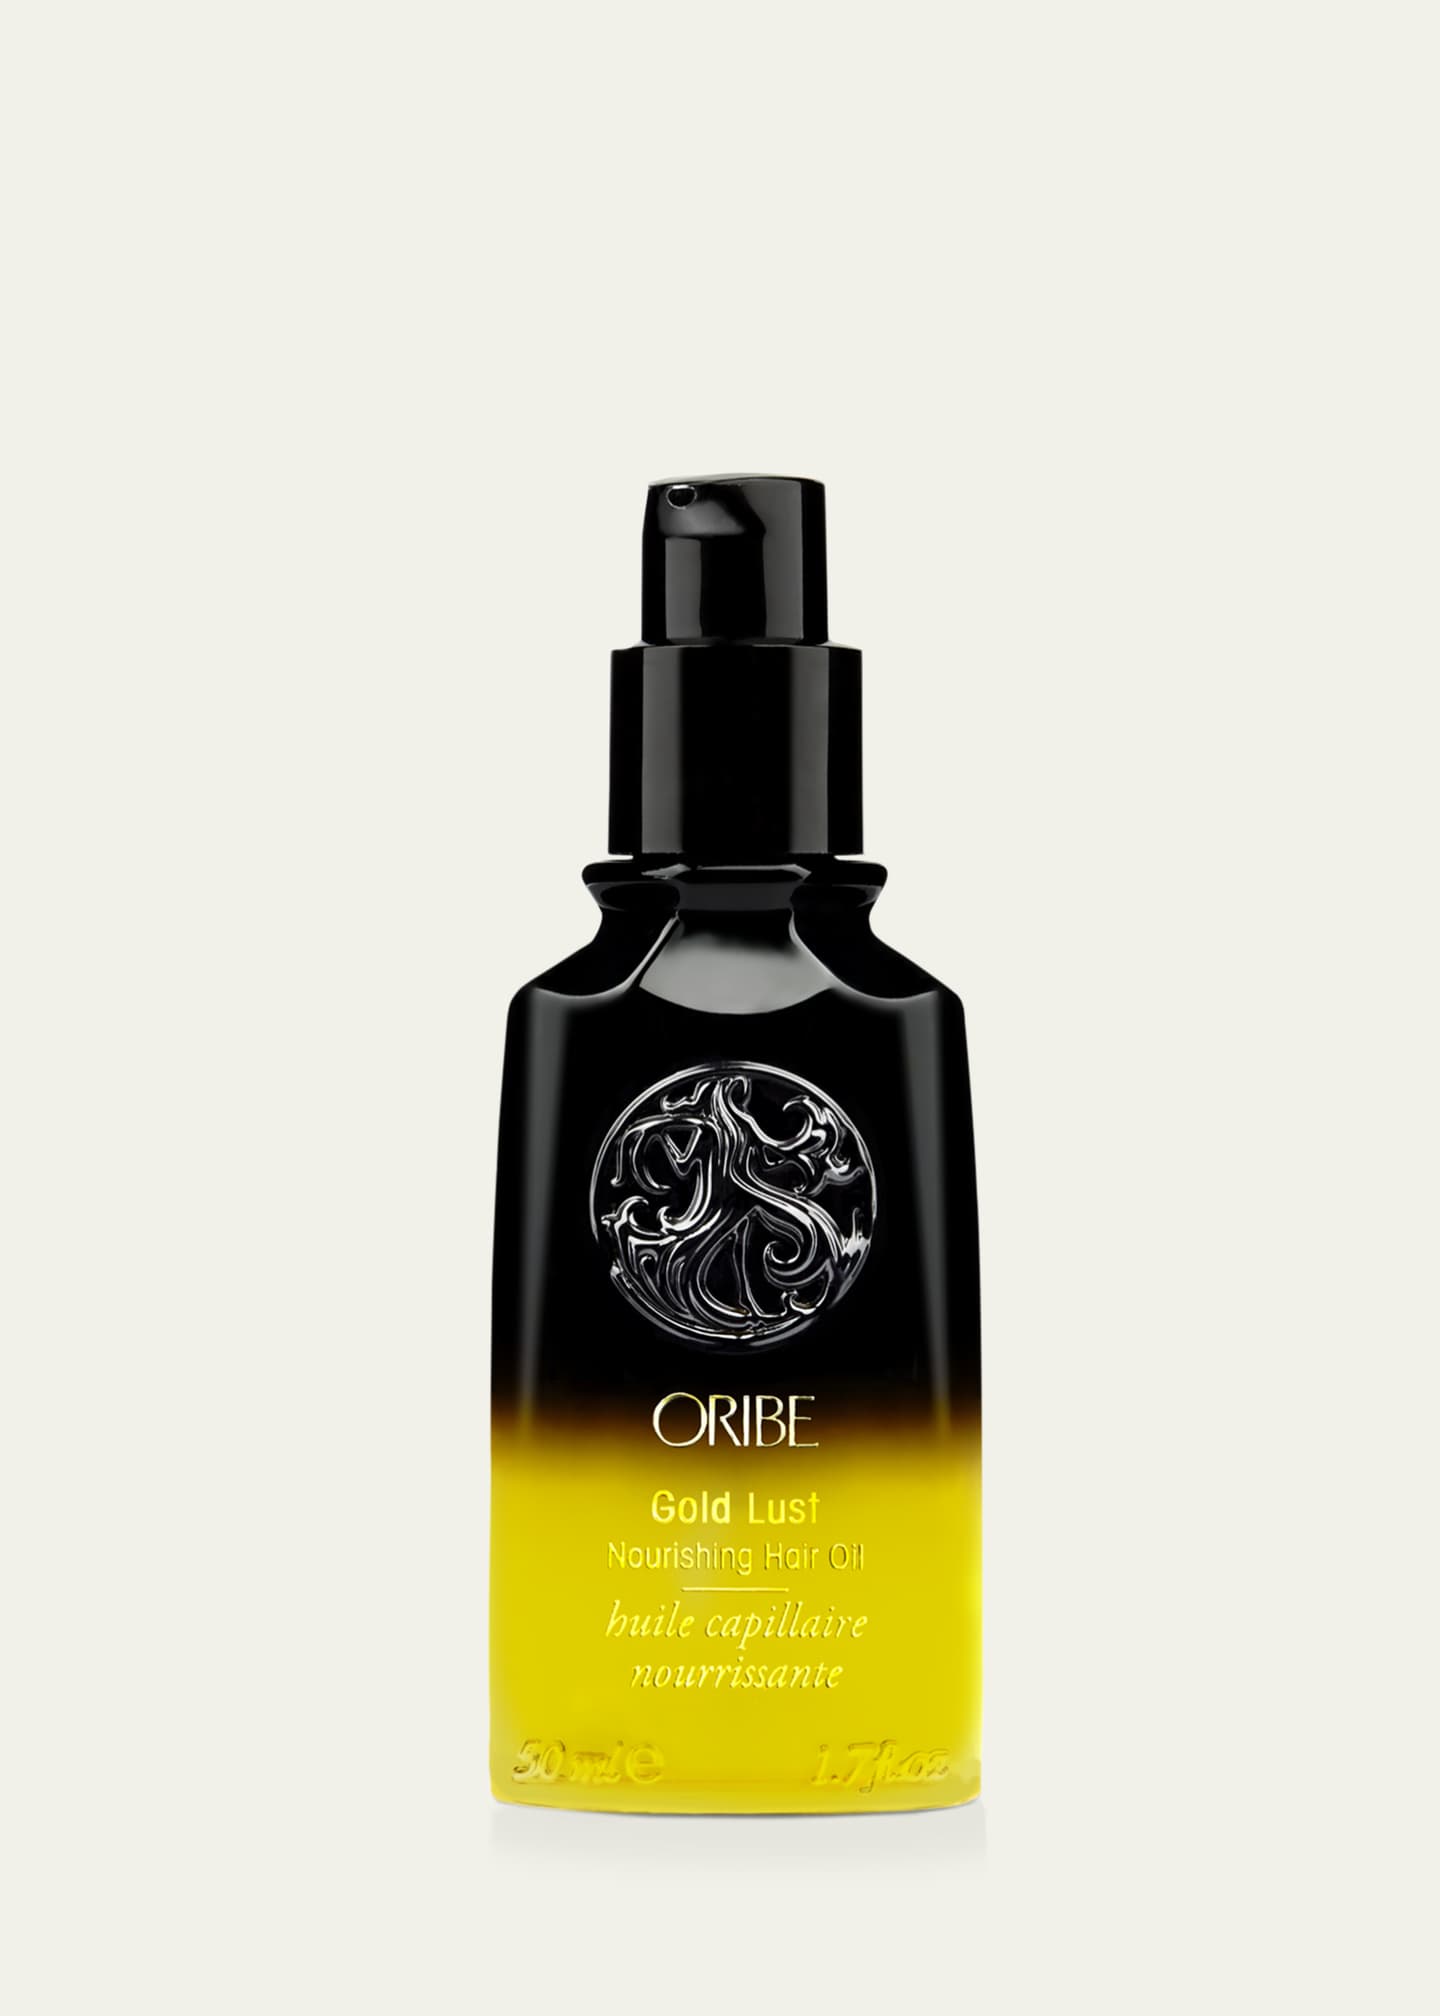 Oribe Gold Lust Nourishing Hair Oil, 1.7 oz. Image 2 of 2